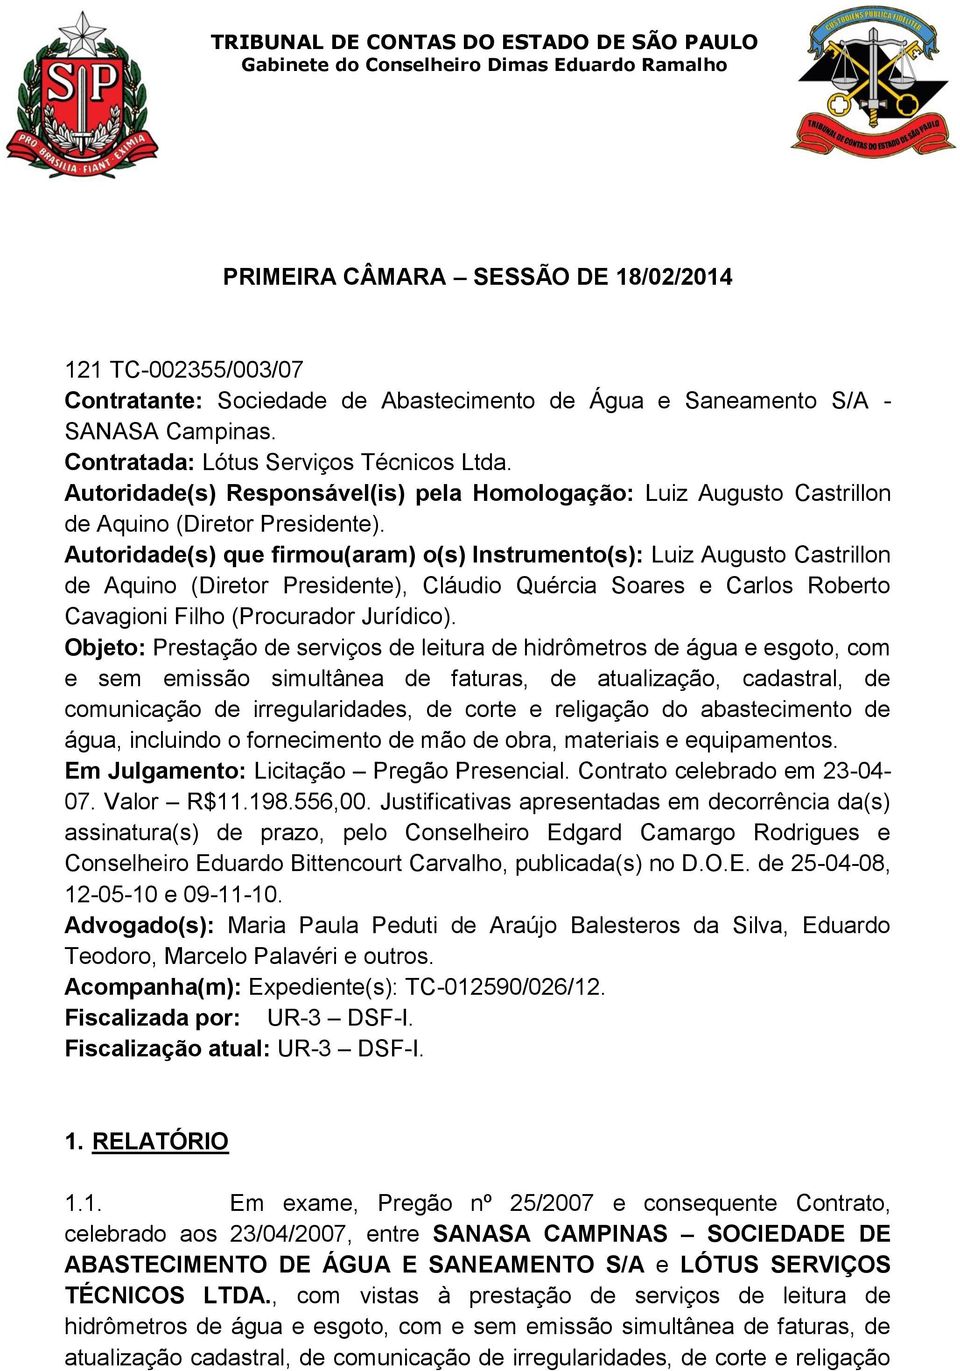 Autoridade(s) que firmou(aram) o(s) Instrumento(s): Luiz Augusto Castrillon de Aquino (Diretor Presidente), Cláudio Quércia Soares e Carlos Roberto Cavagioni Filho (Procurador Jurídico).